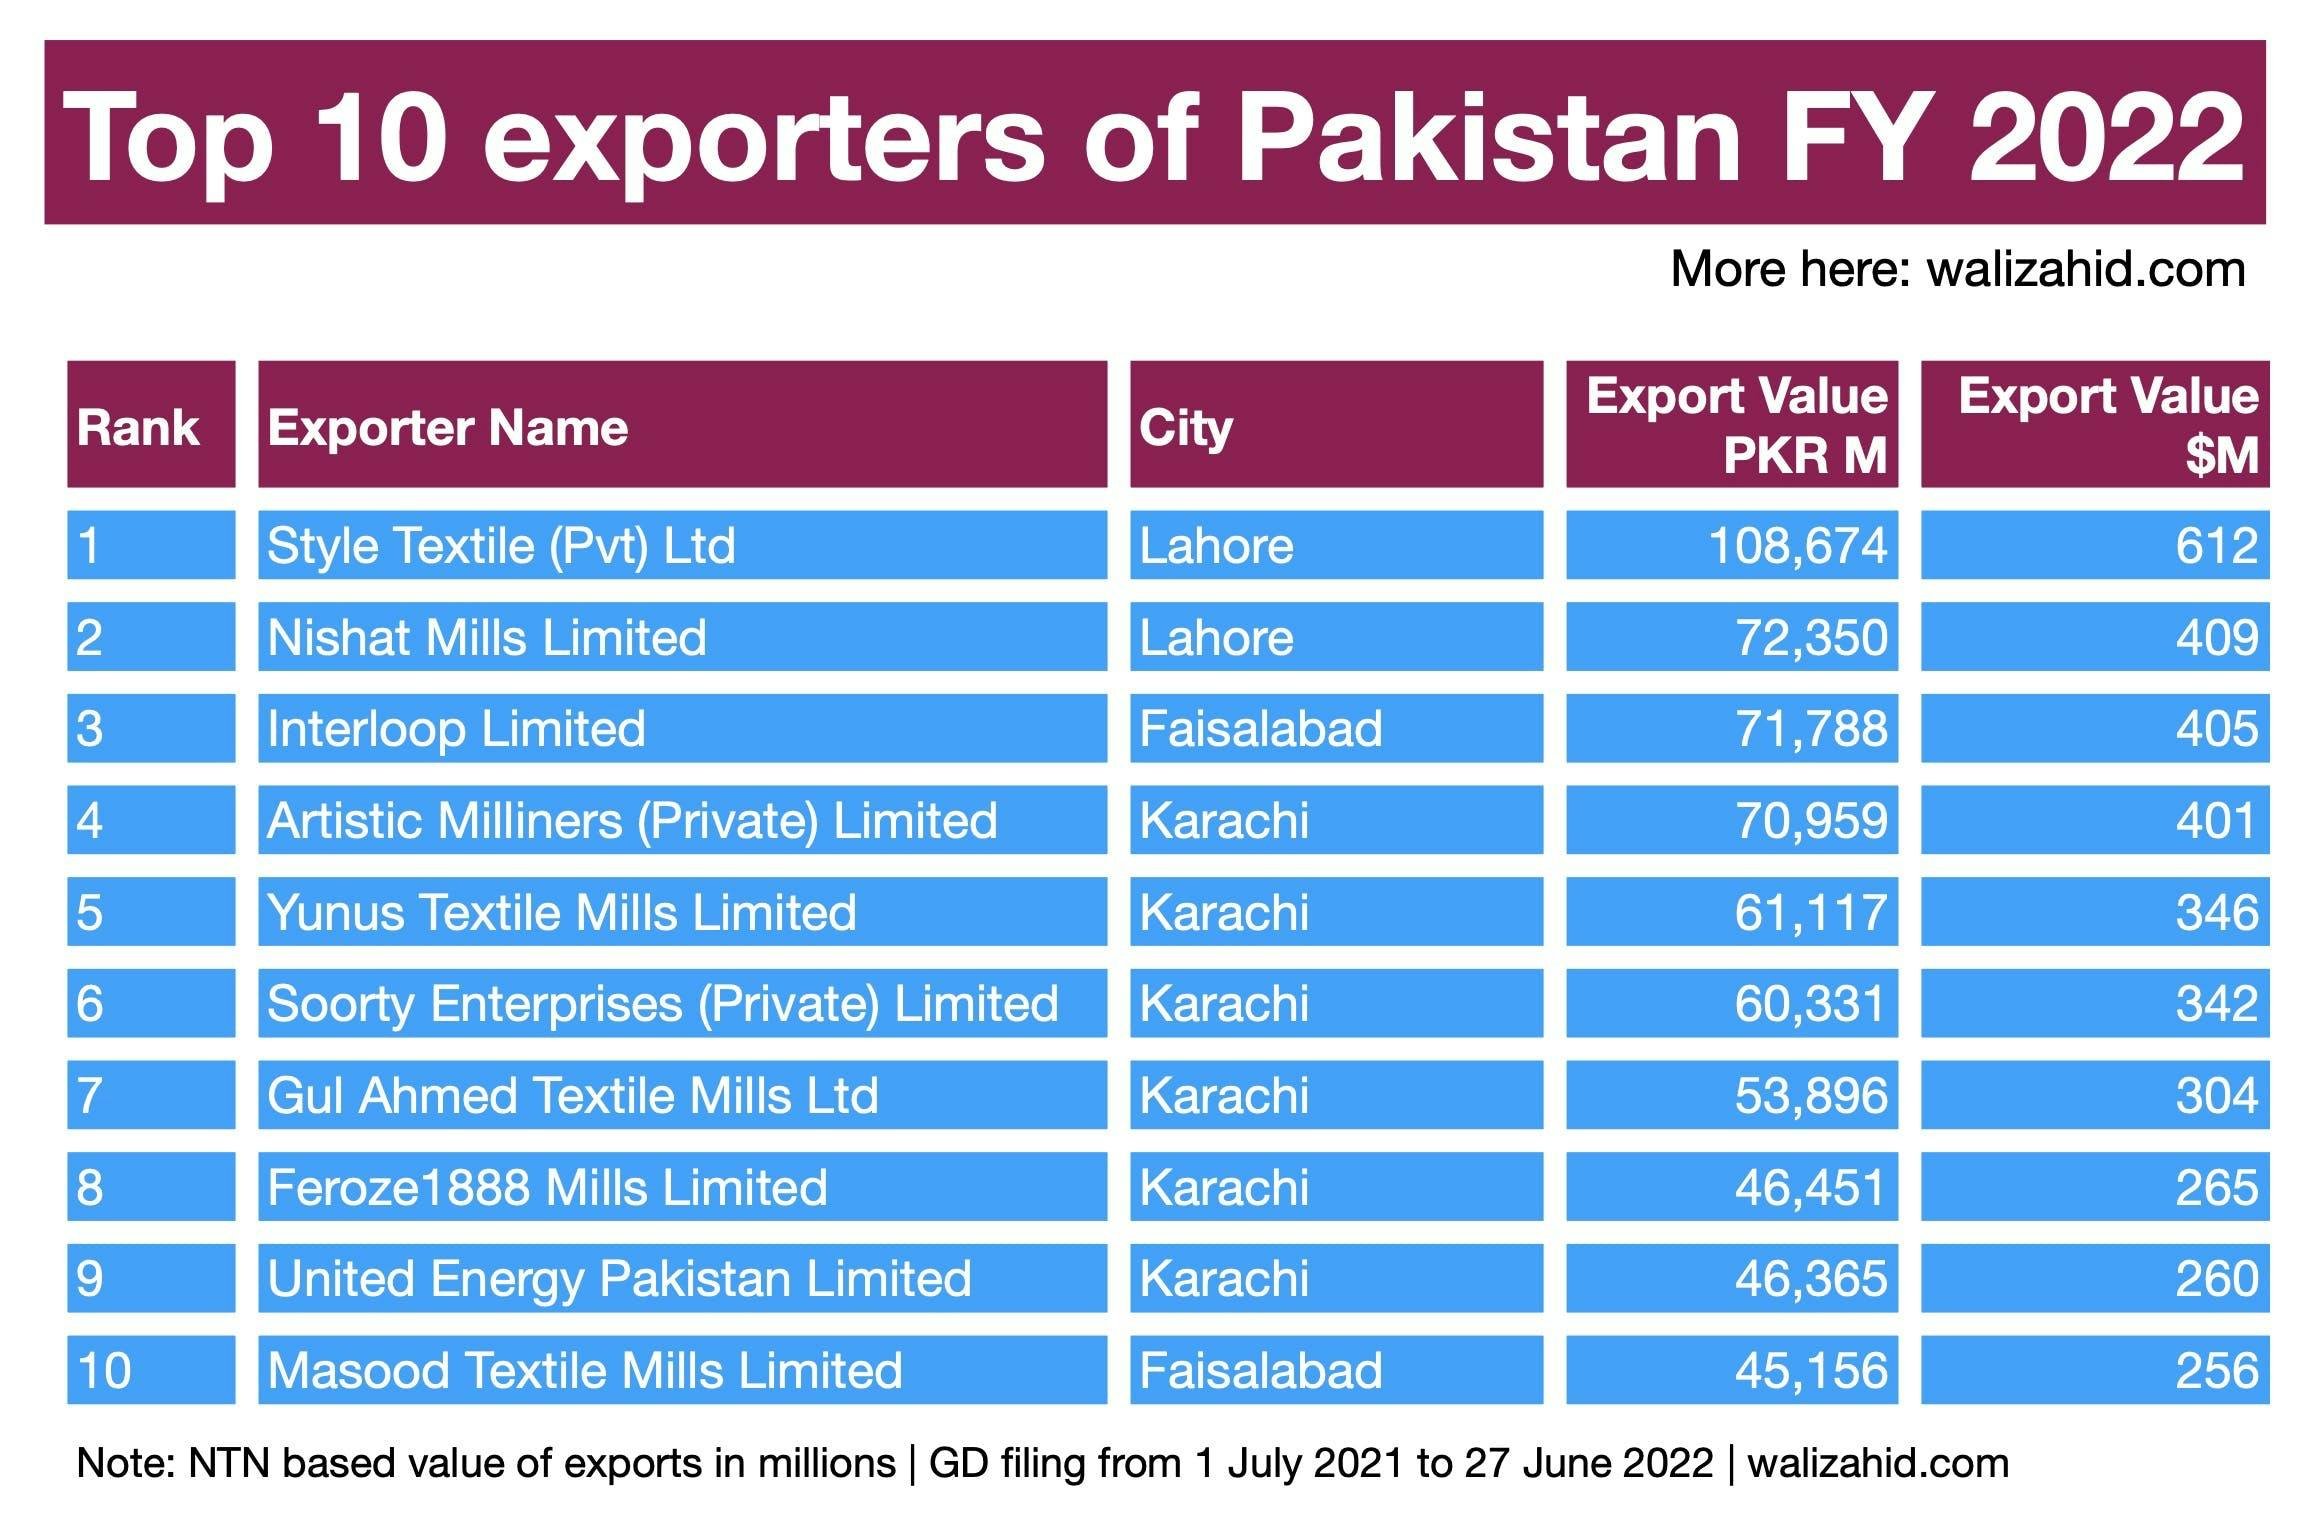 Top 10 exporters of Pakistan in FY 2022